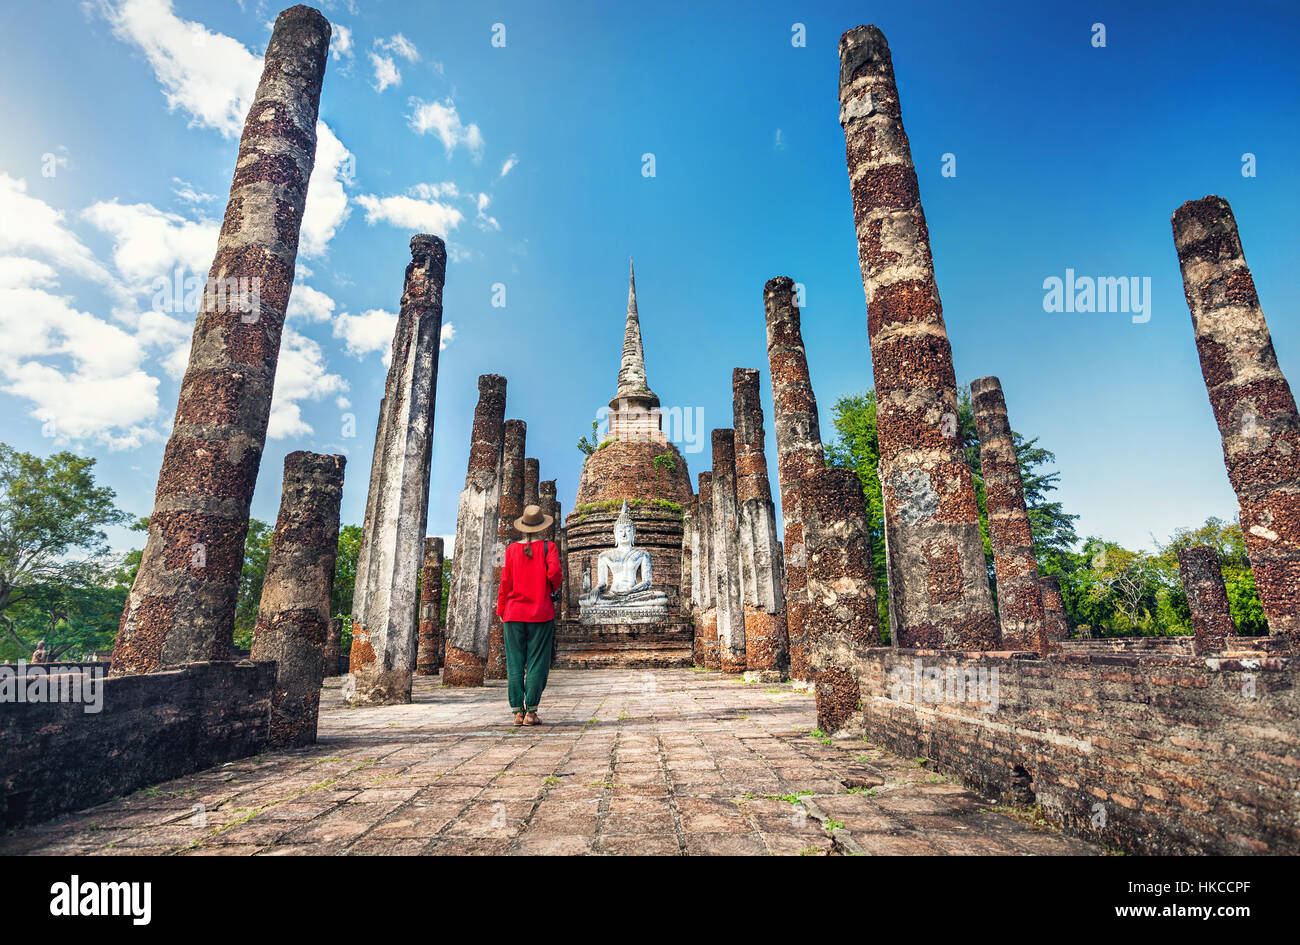 Tourist donna in costume rosso guardando antica statua di Buddha nel Wat Sa Si di Sukhothai Historical Park, Thailandia Foto Stock